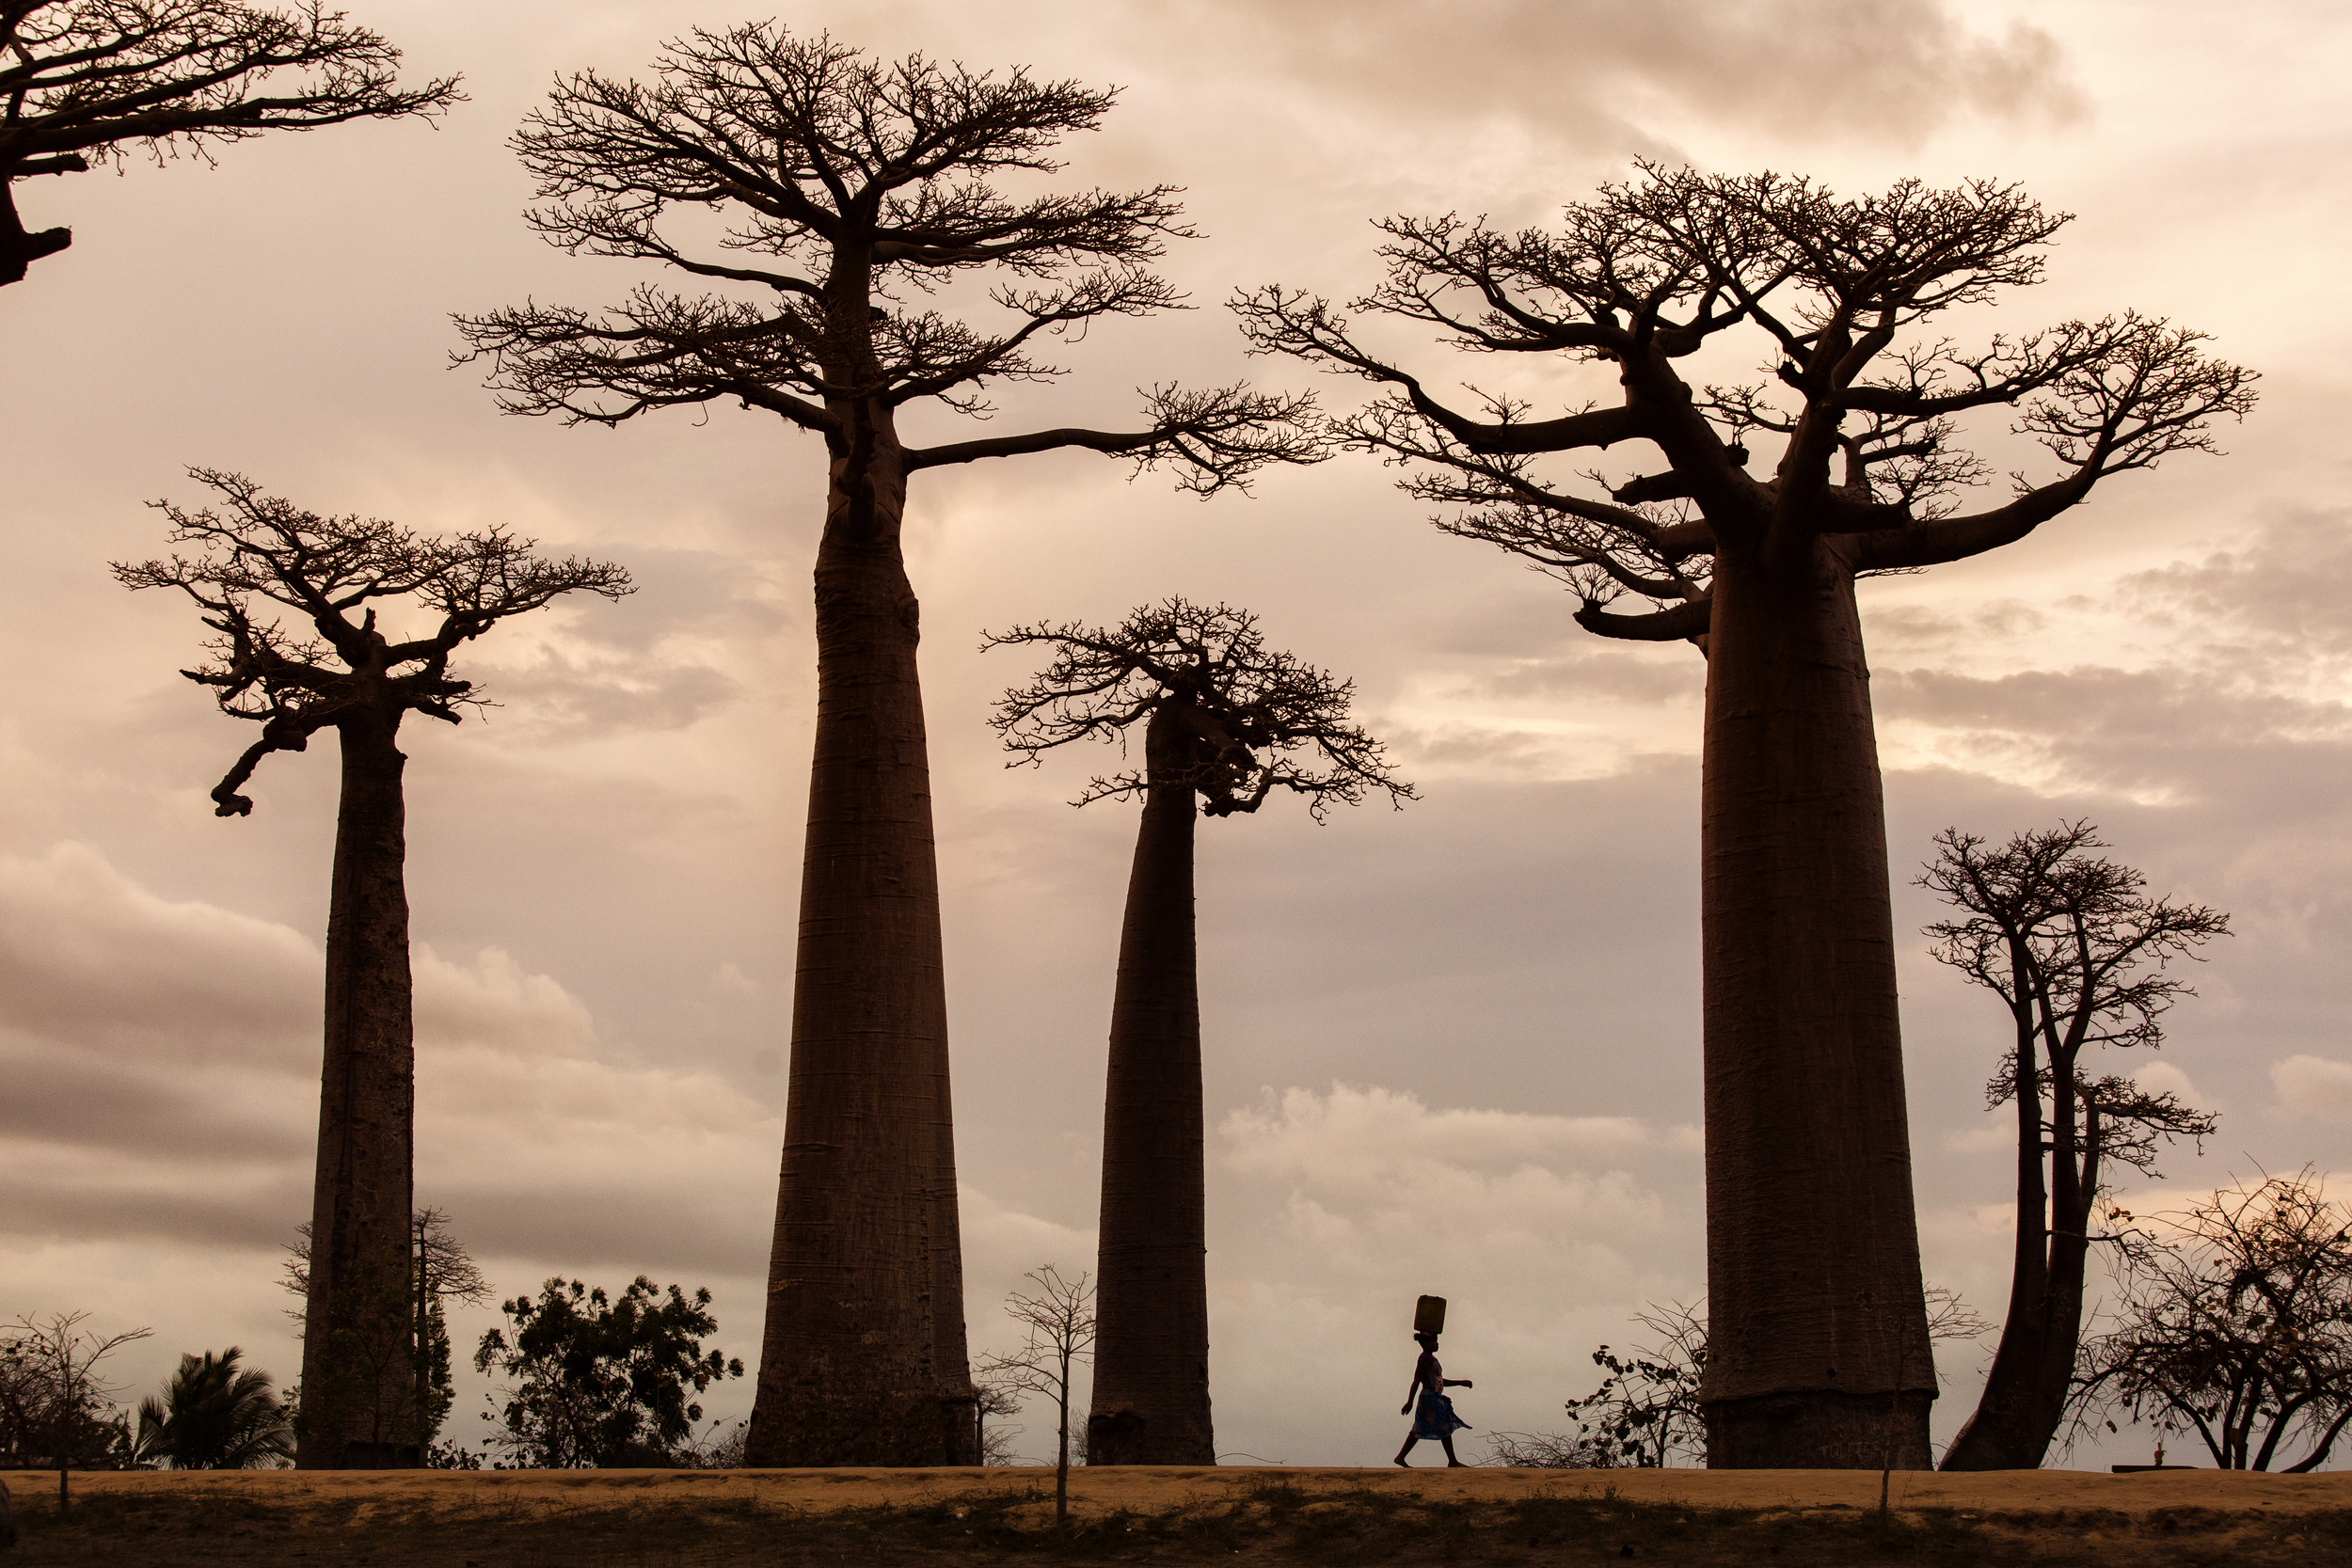 Ба баб. Баобаб дерево. Африка Килиманджаро баобабы. Африканское дерево баобаб. Дерево в Африке баобаб.